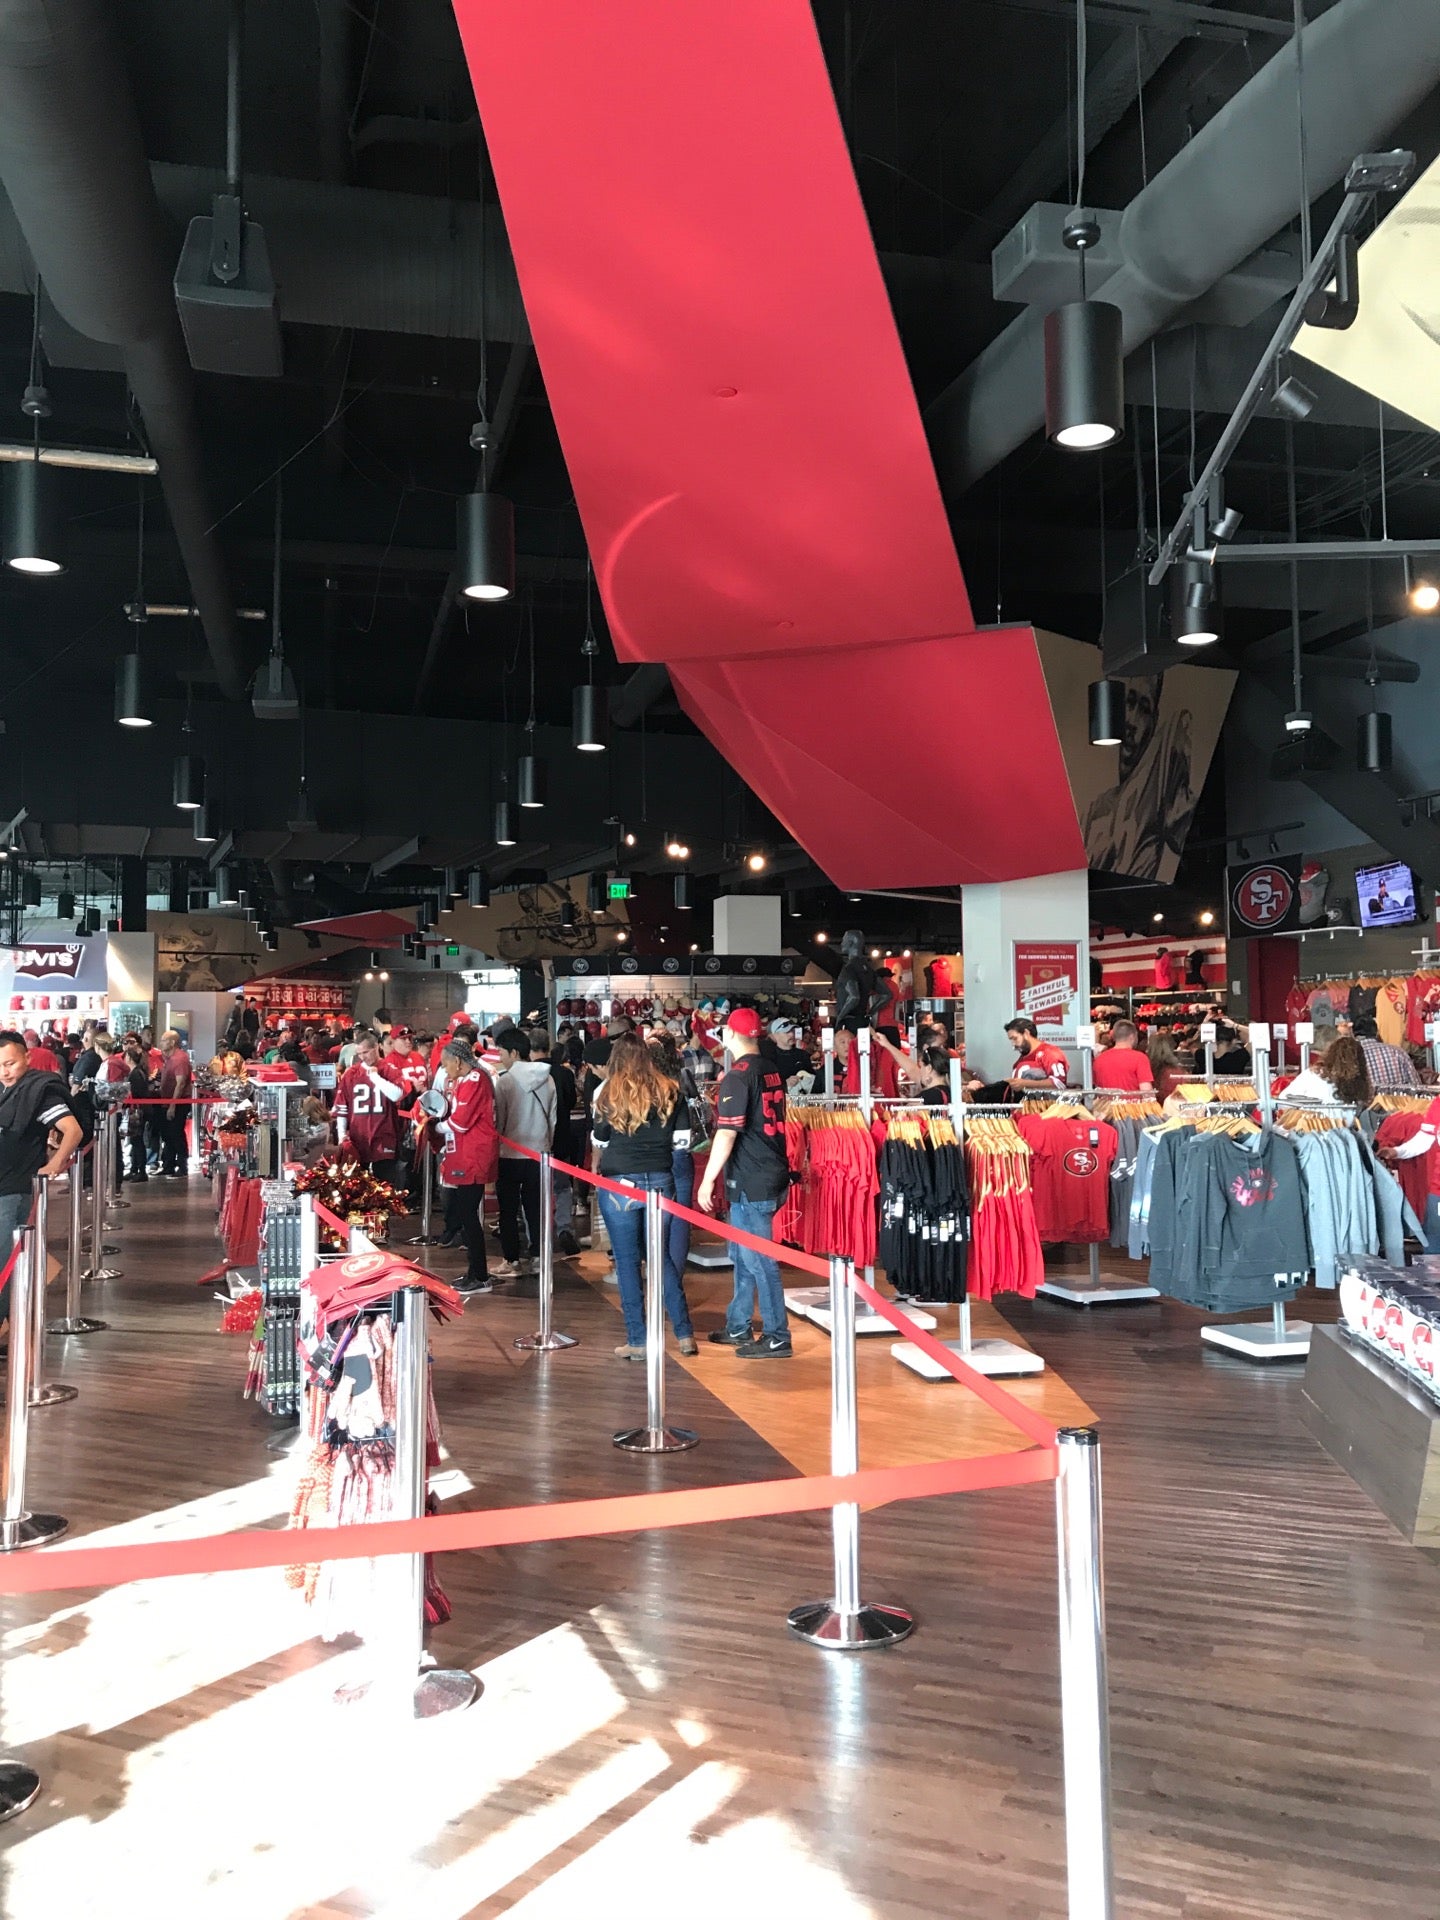 49ers team store at levi's stadium